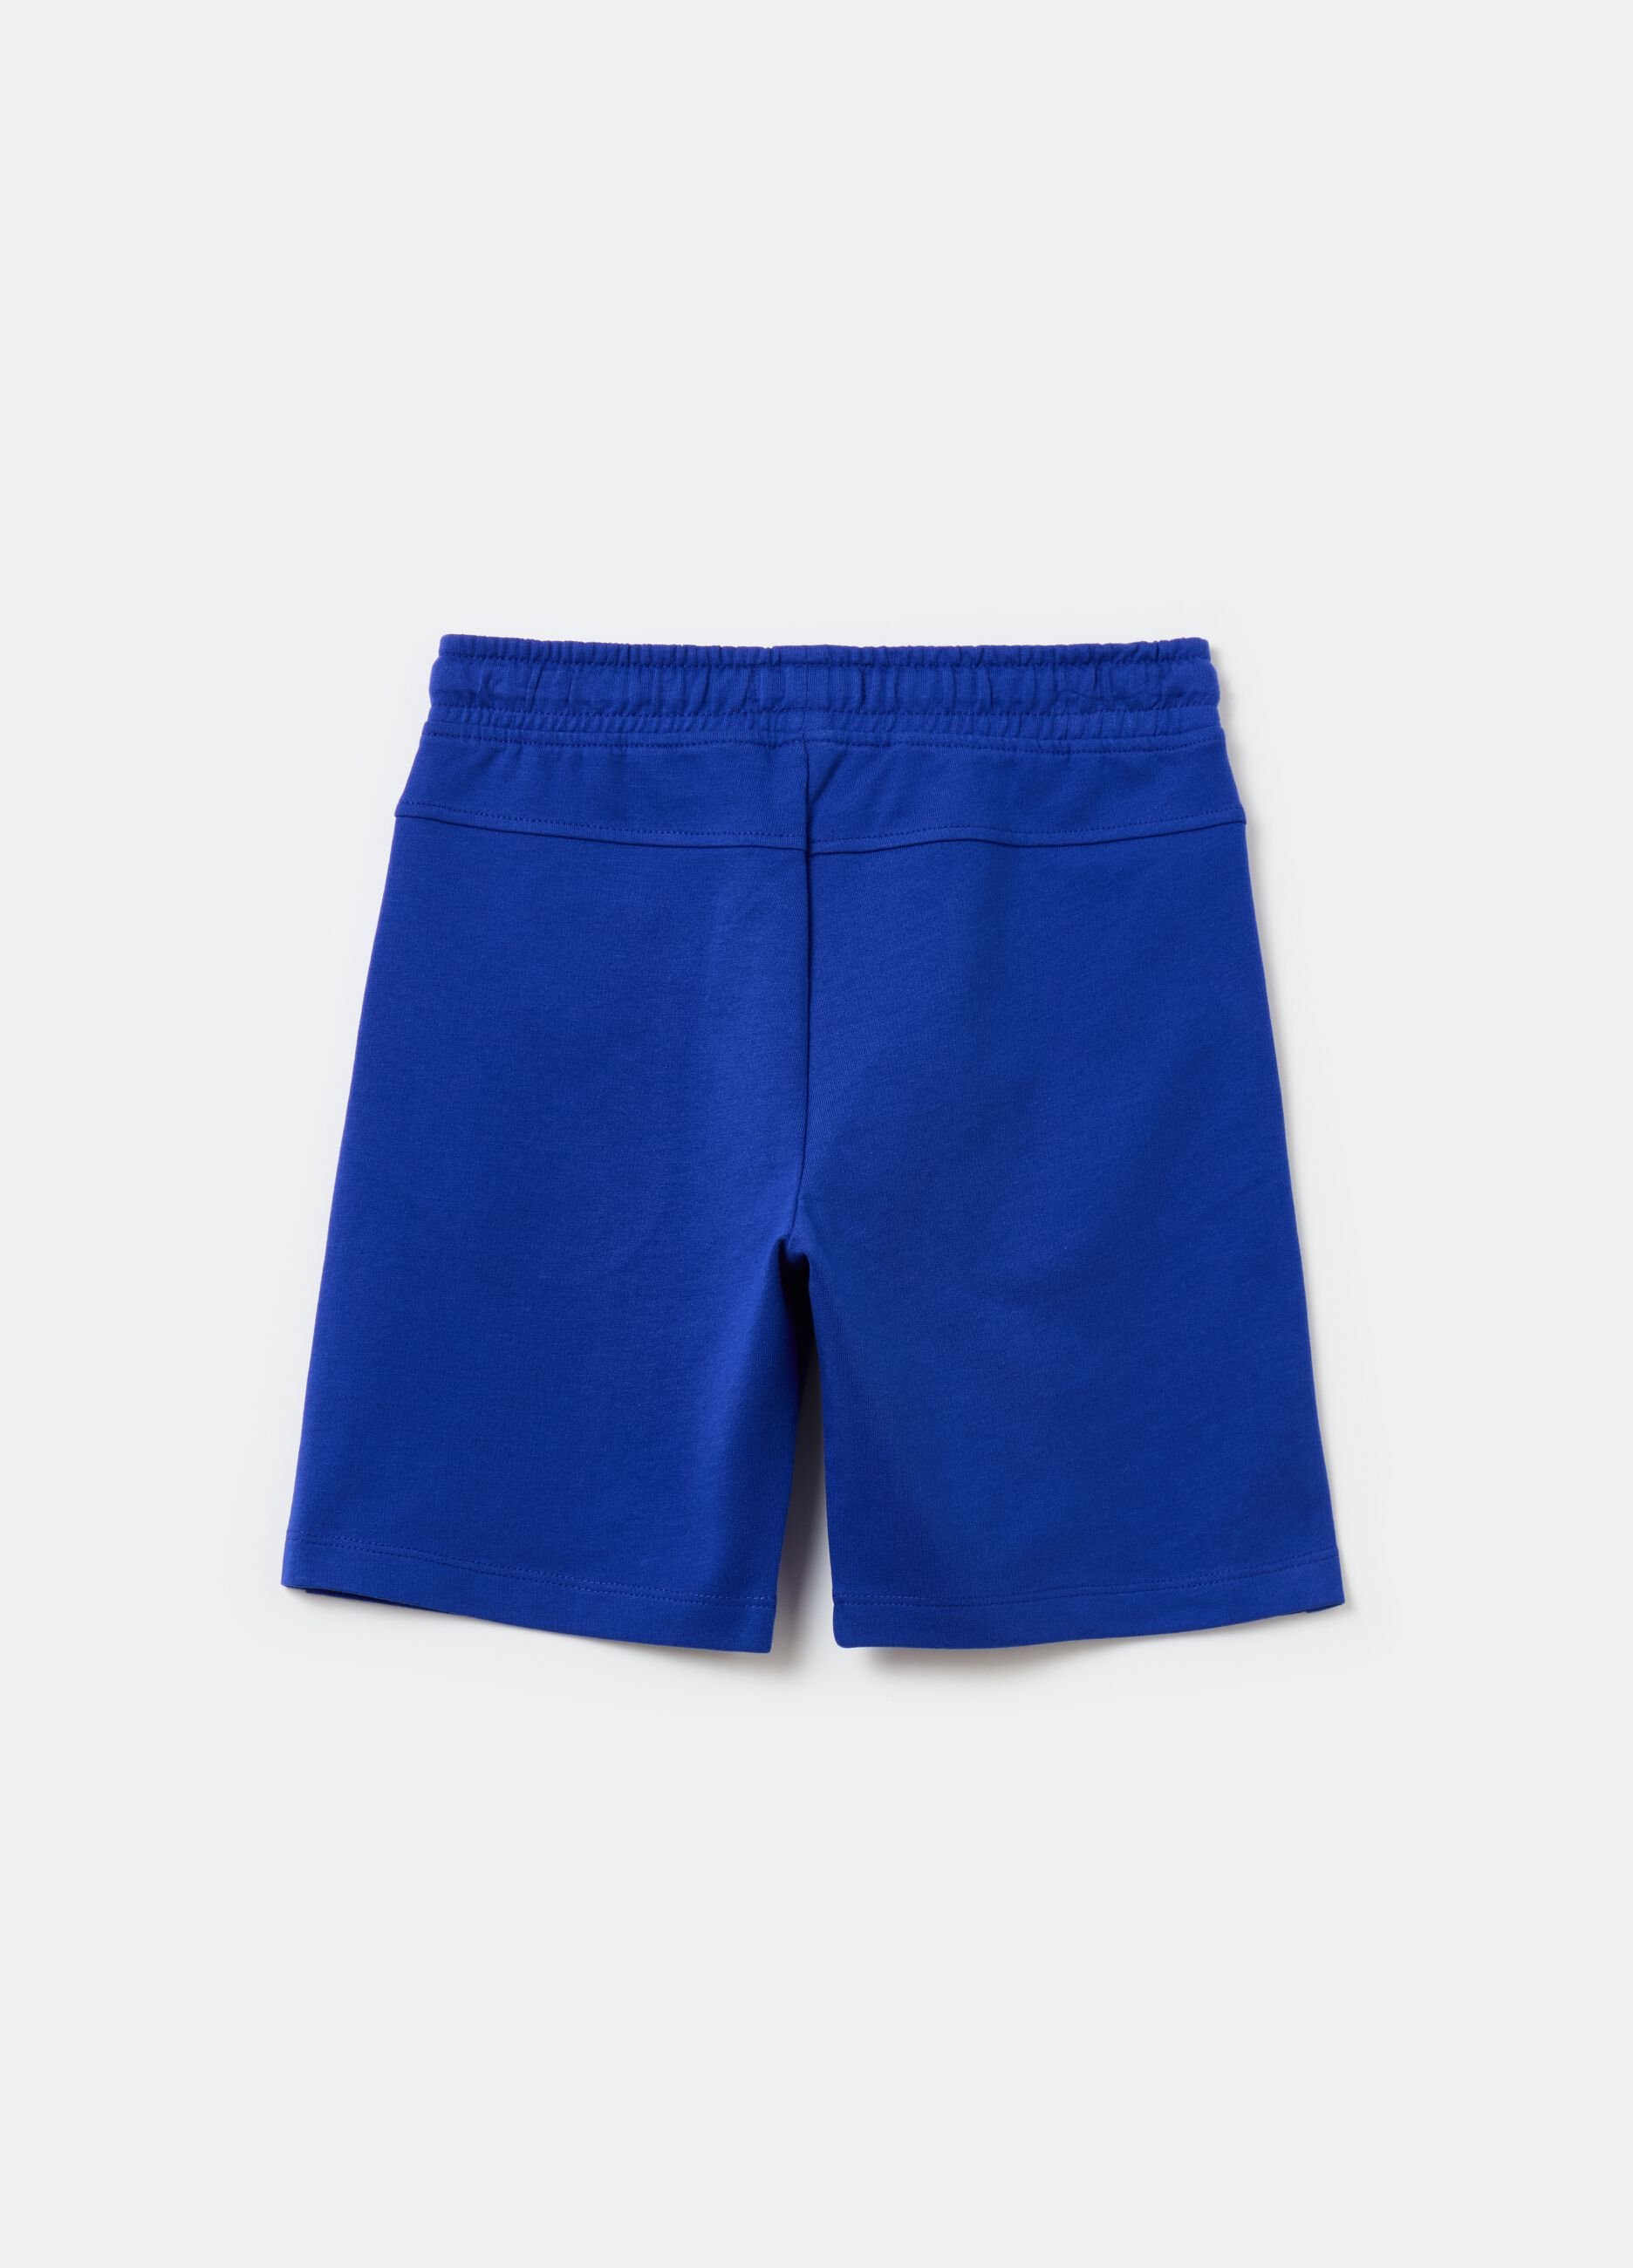 Bermuda shorts with drawstring and print